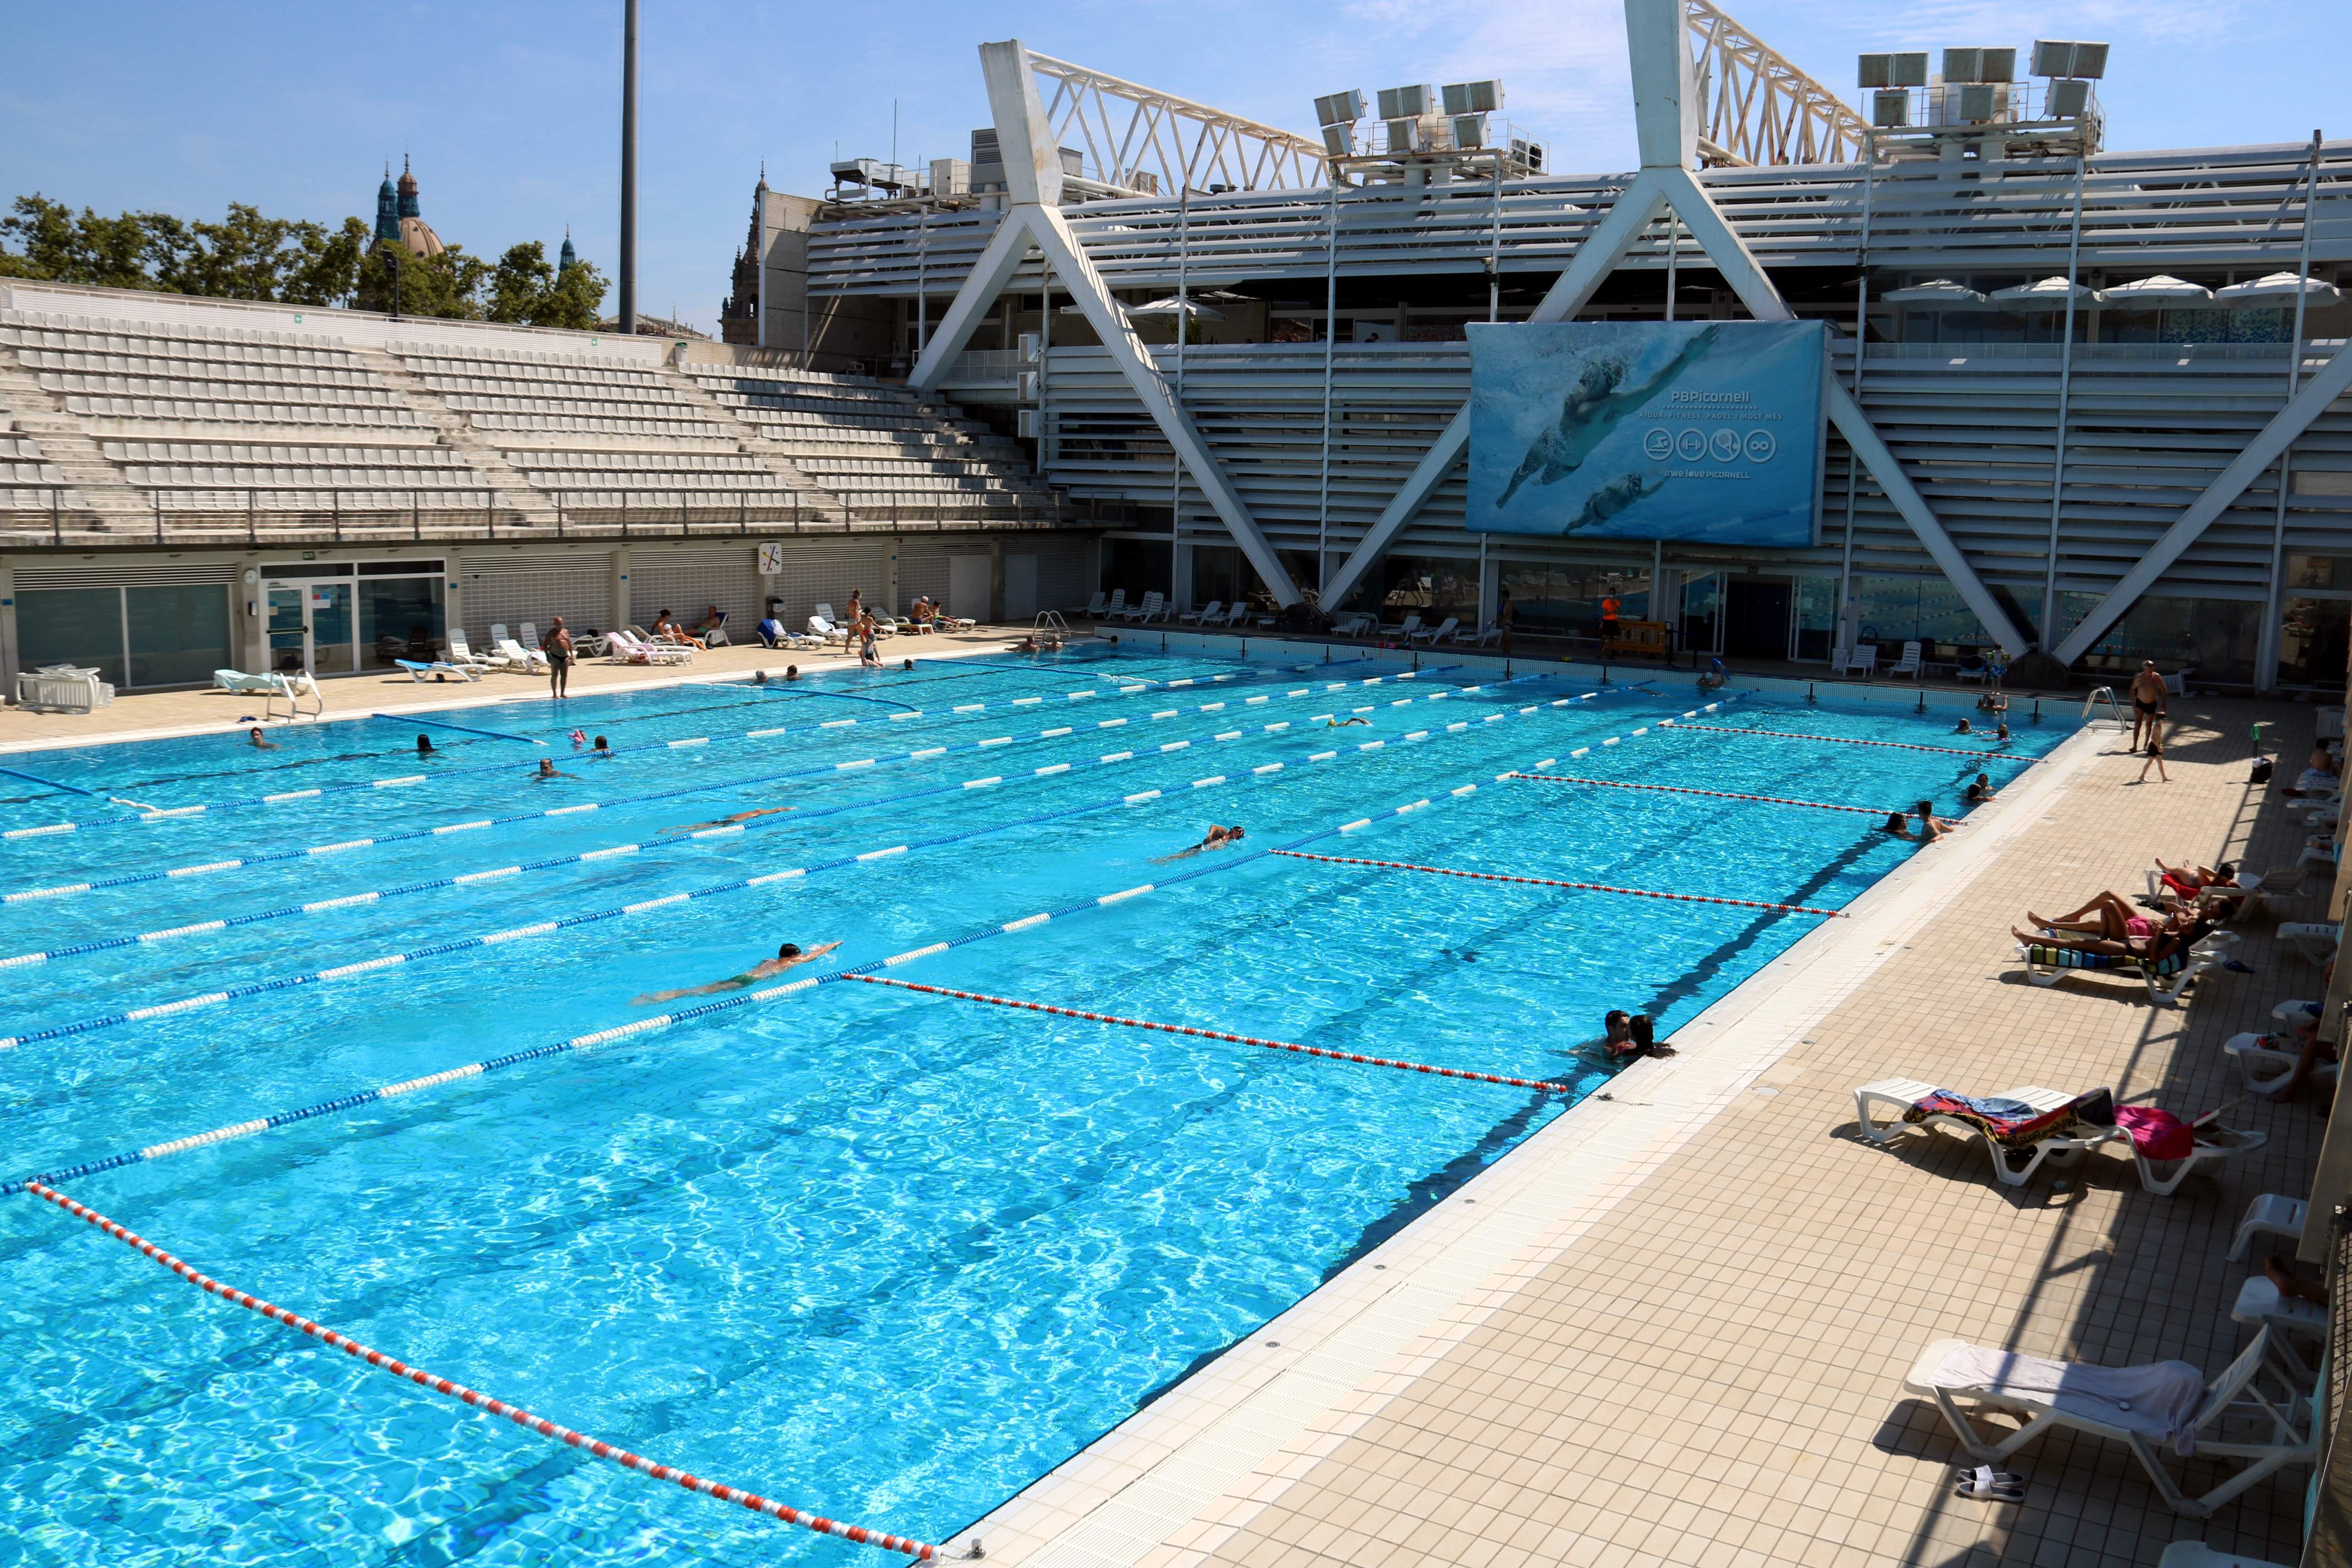 L’Ajuntament de Barcelona declararà refugi climàtic les piscines públiques perquè obrin a l'estiu